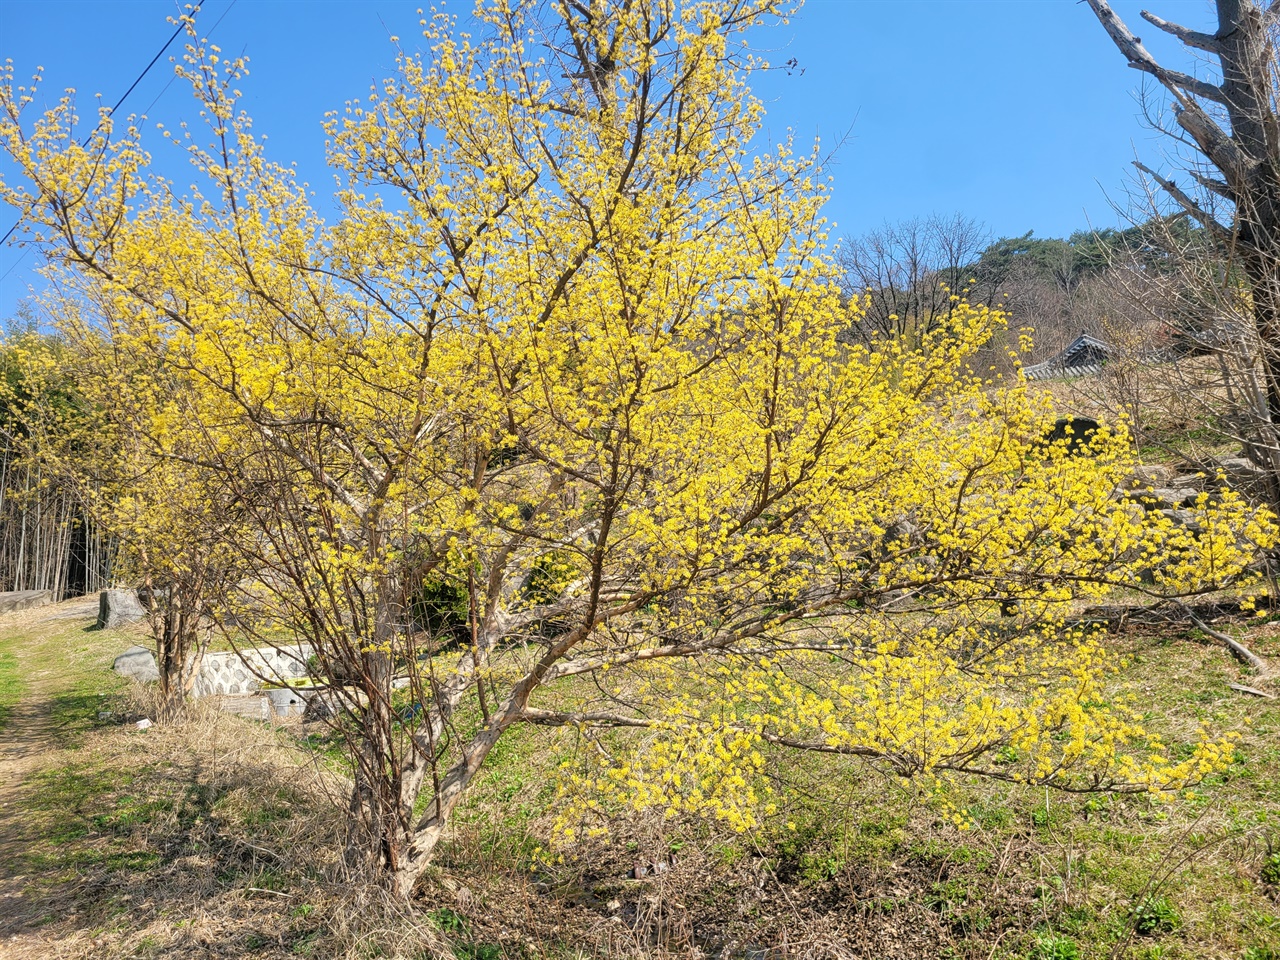 거북이마을은 수선화 이외에도 홍매화, 생강나무 등 한 장소에서 여러 가지 봄꽃을 볼 수 있는 곳이다.